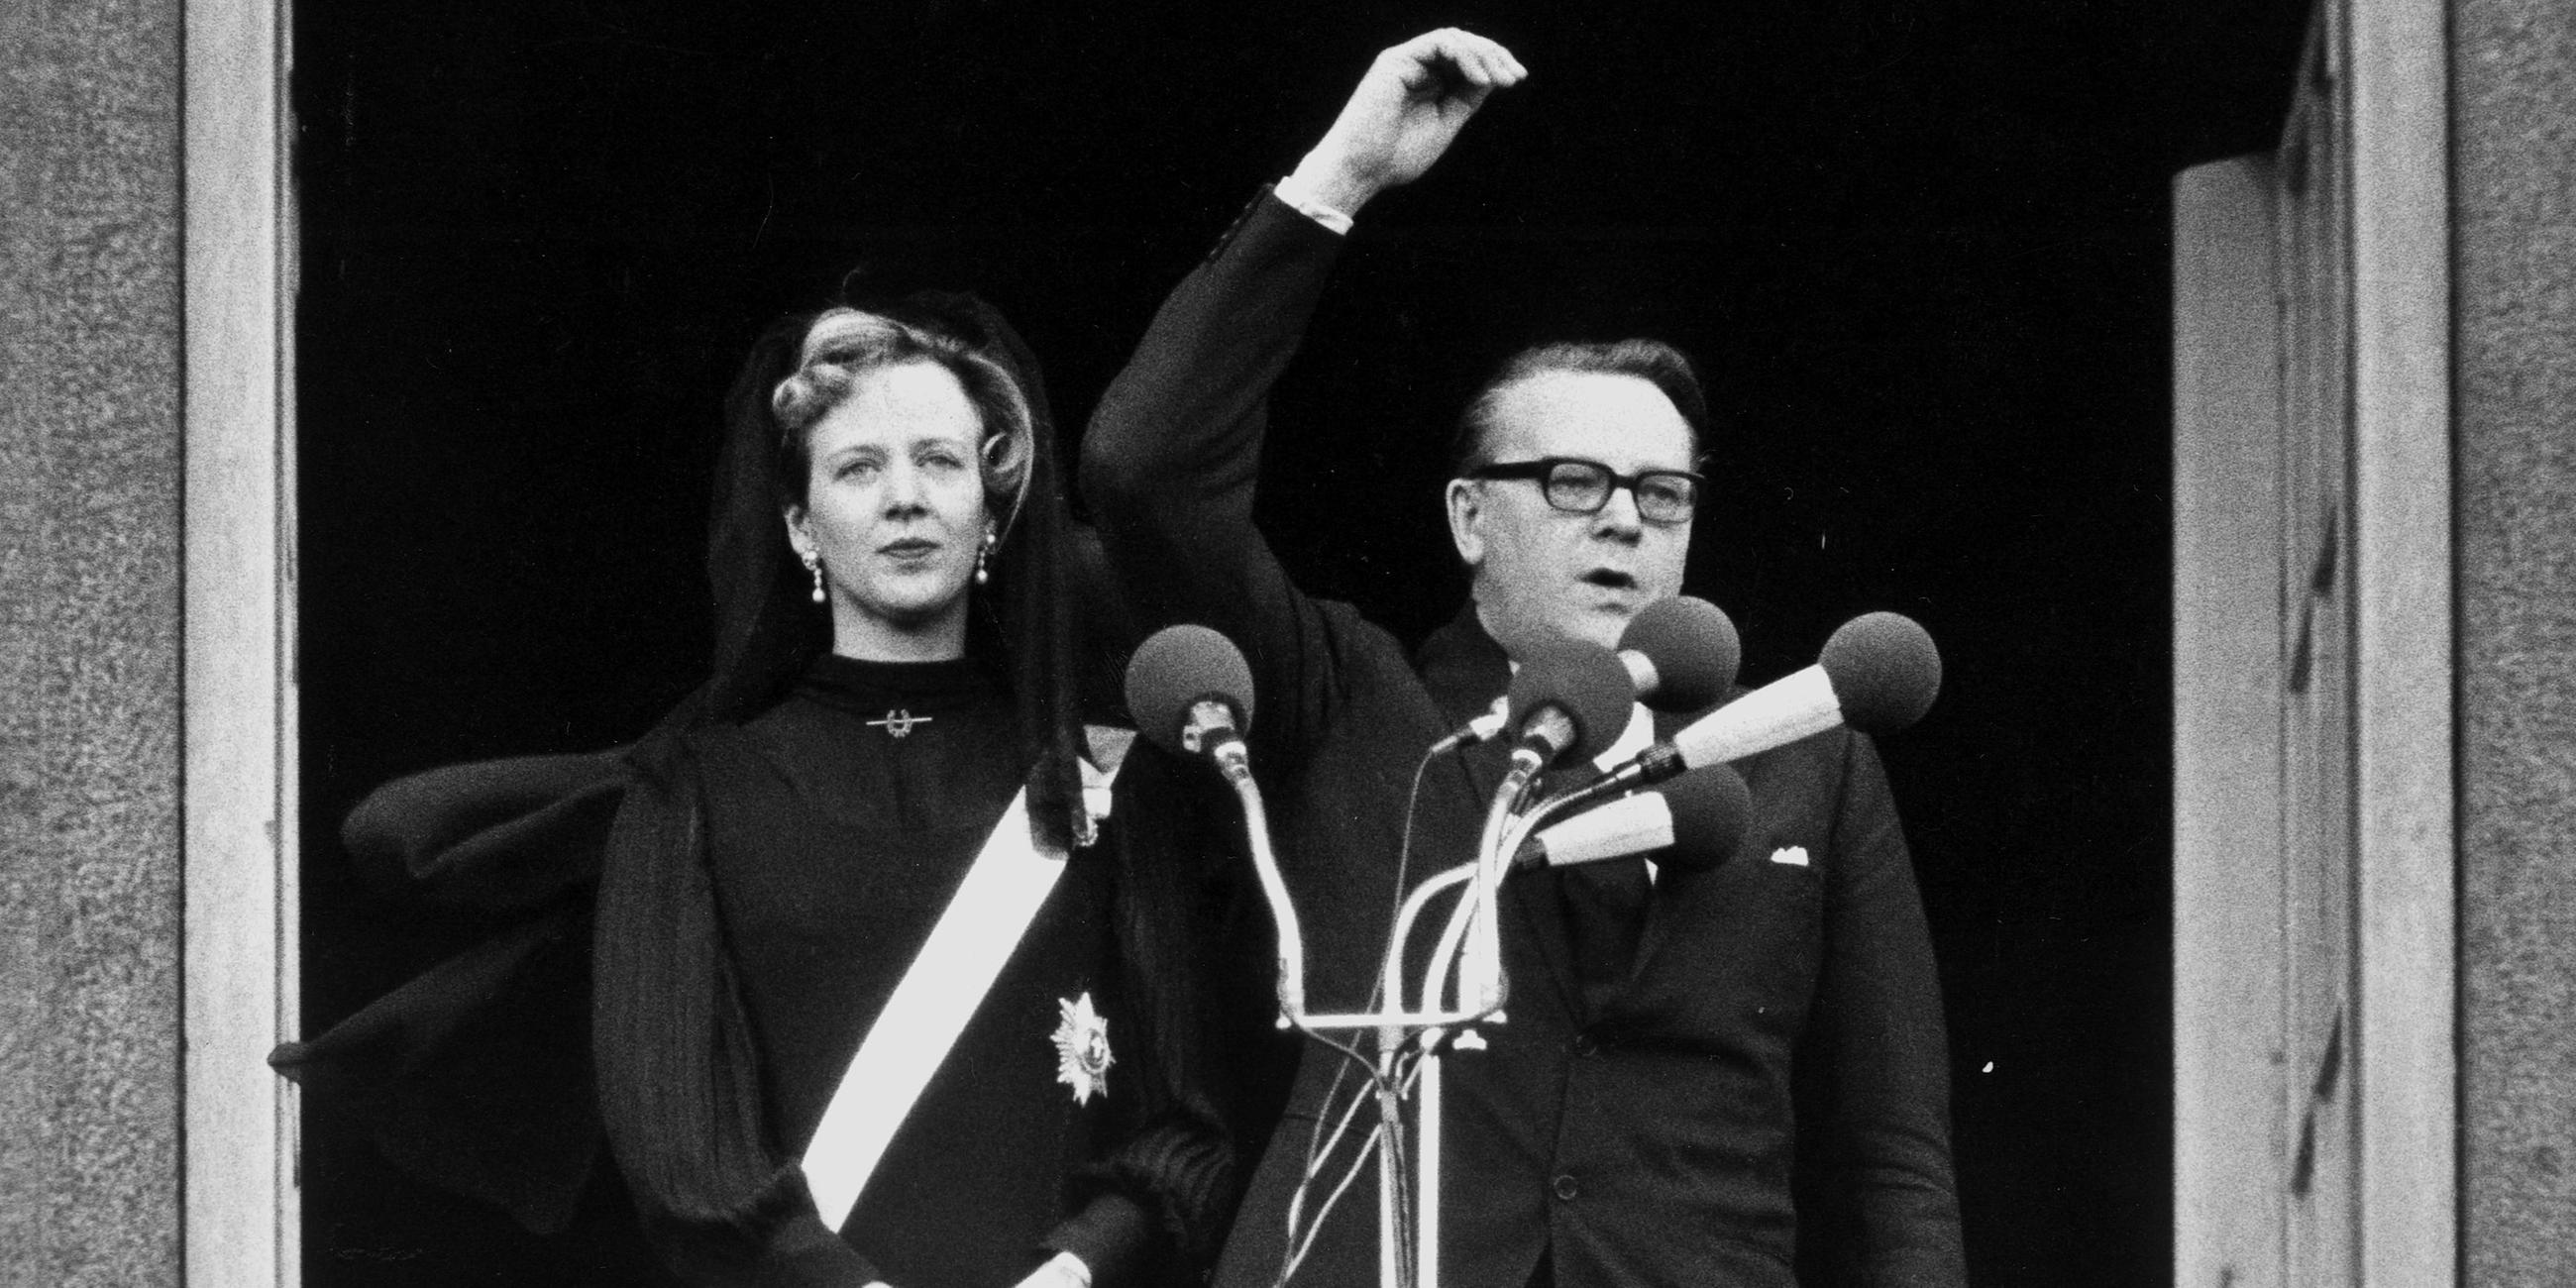 Das Bild zeigt Königin Margrethe und Ministerpräsident Jens Otto Krag bei ihrer Proklamation zur Königin auf Schloss Christiansborg.